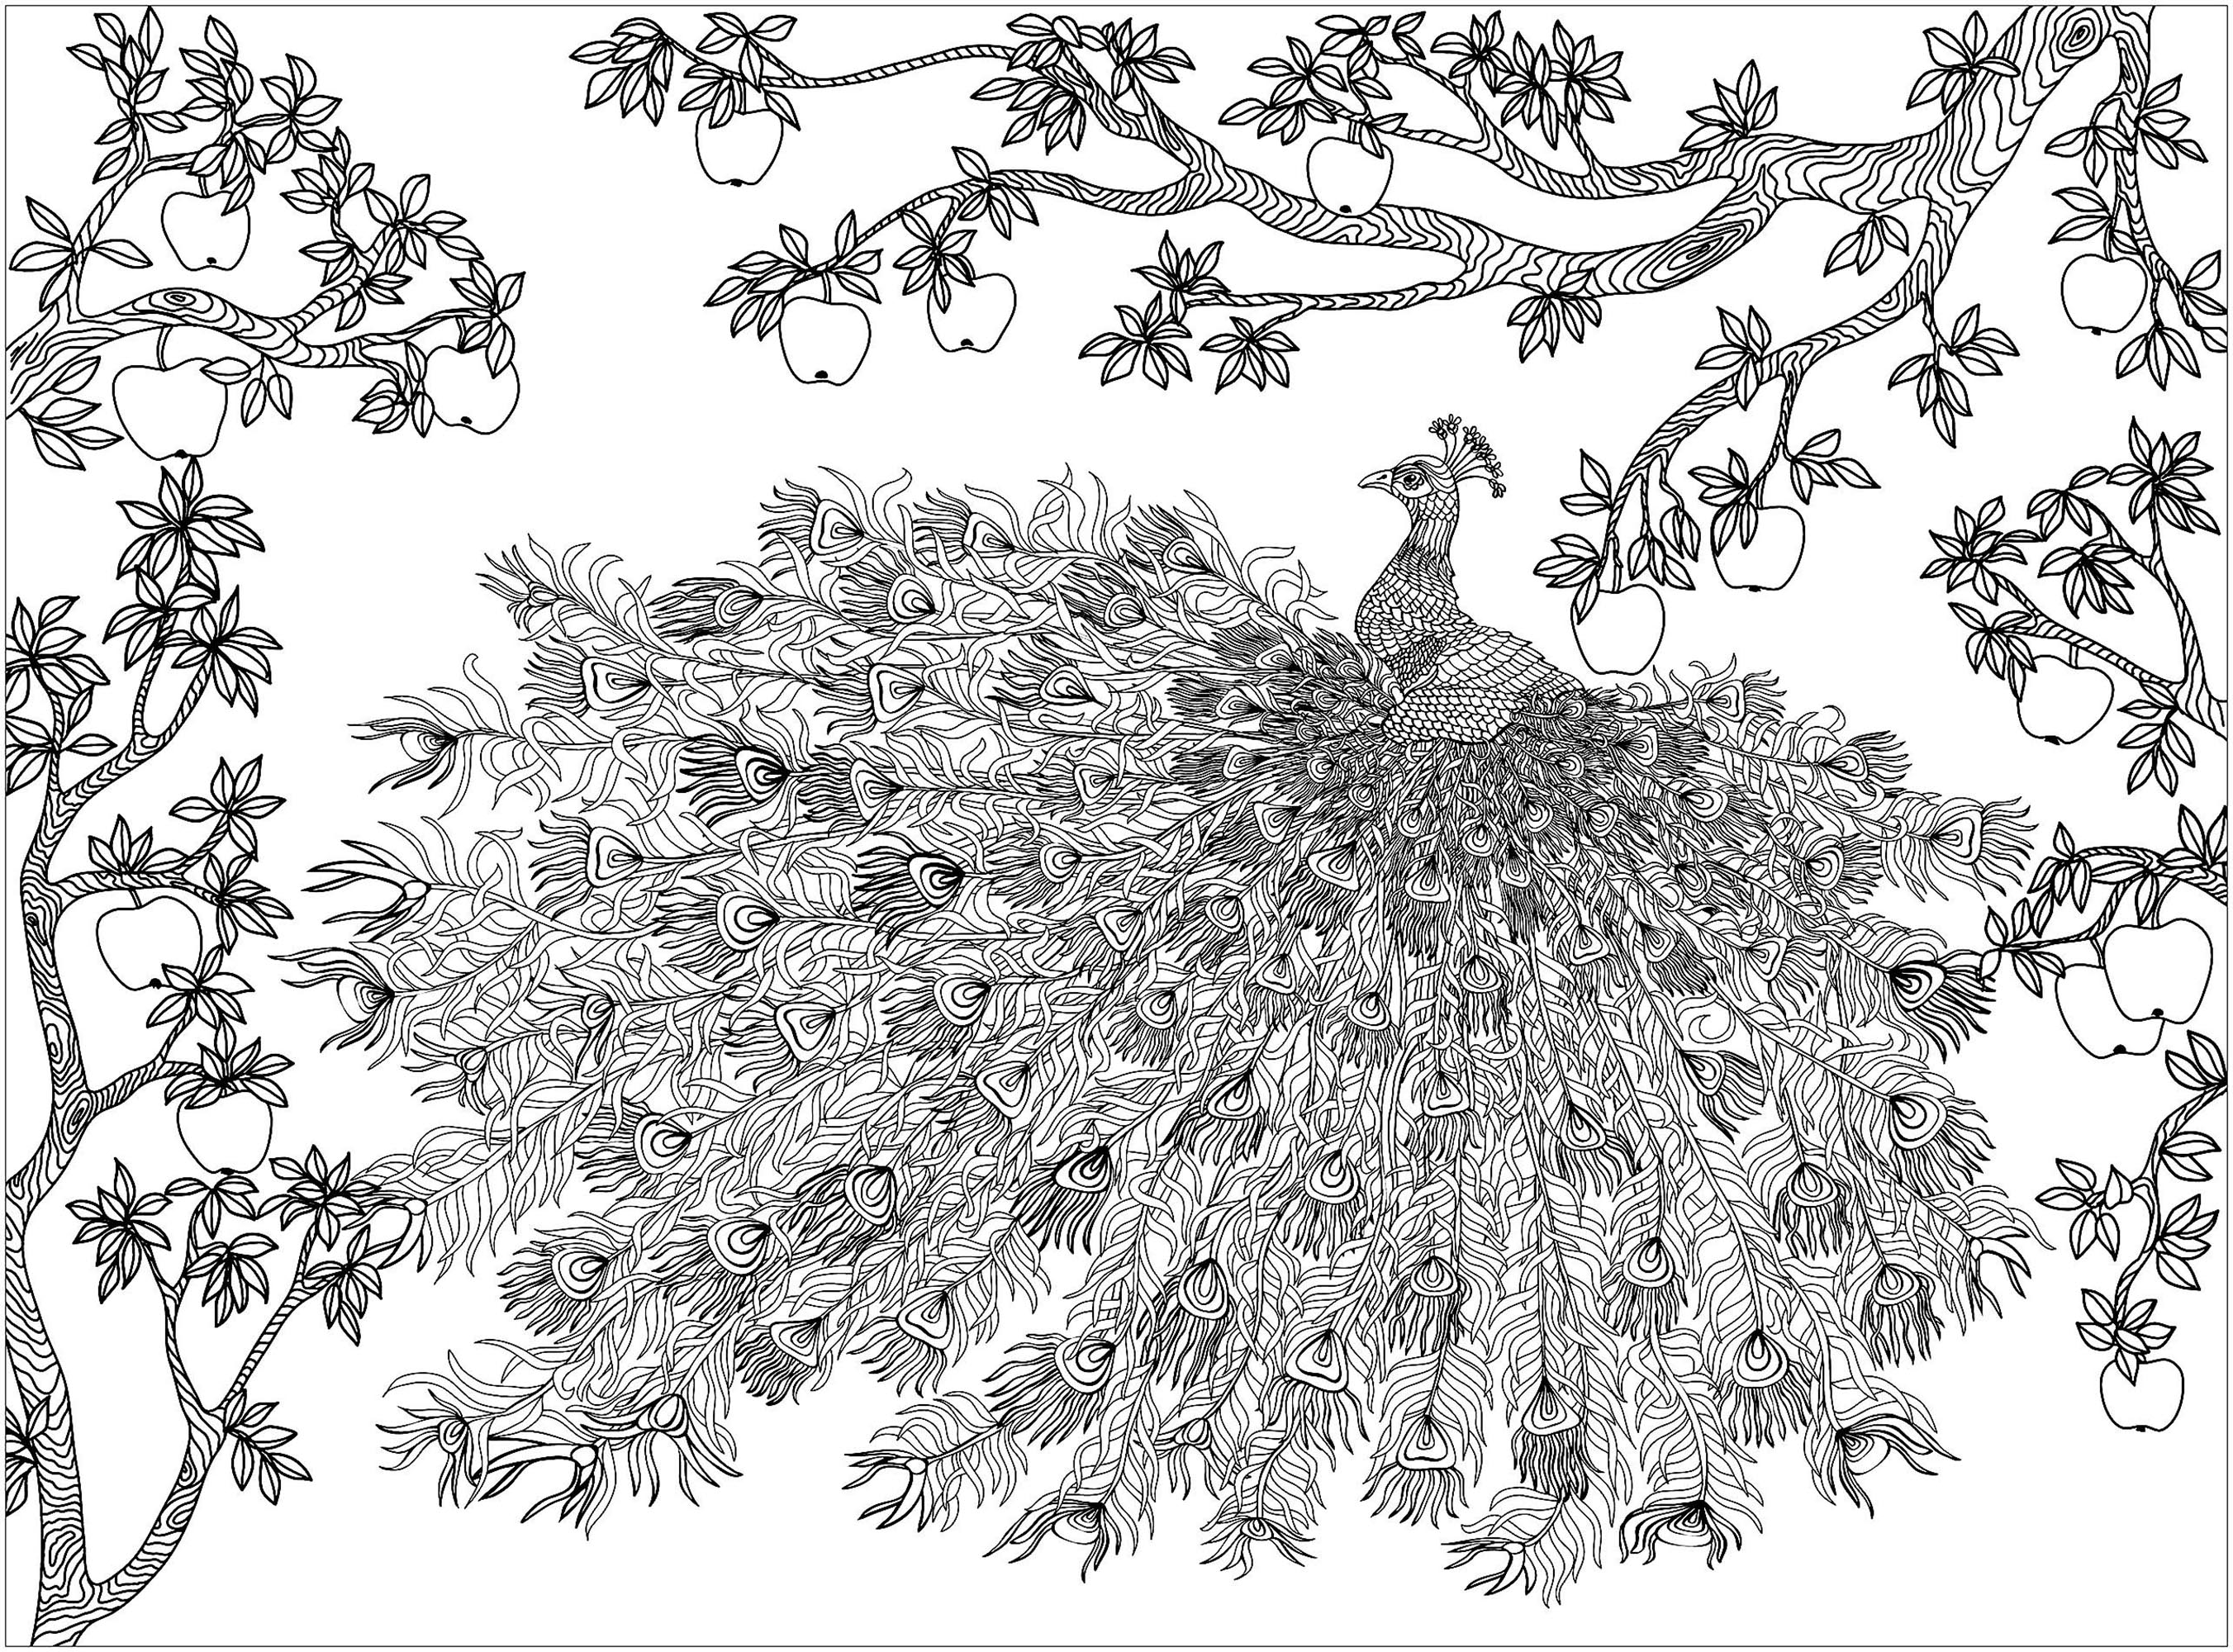 Manzano sobre un pavo real y su maravilloso plumaje, Origen : 123rf   Artista : Vita Kosova